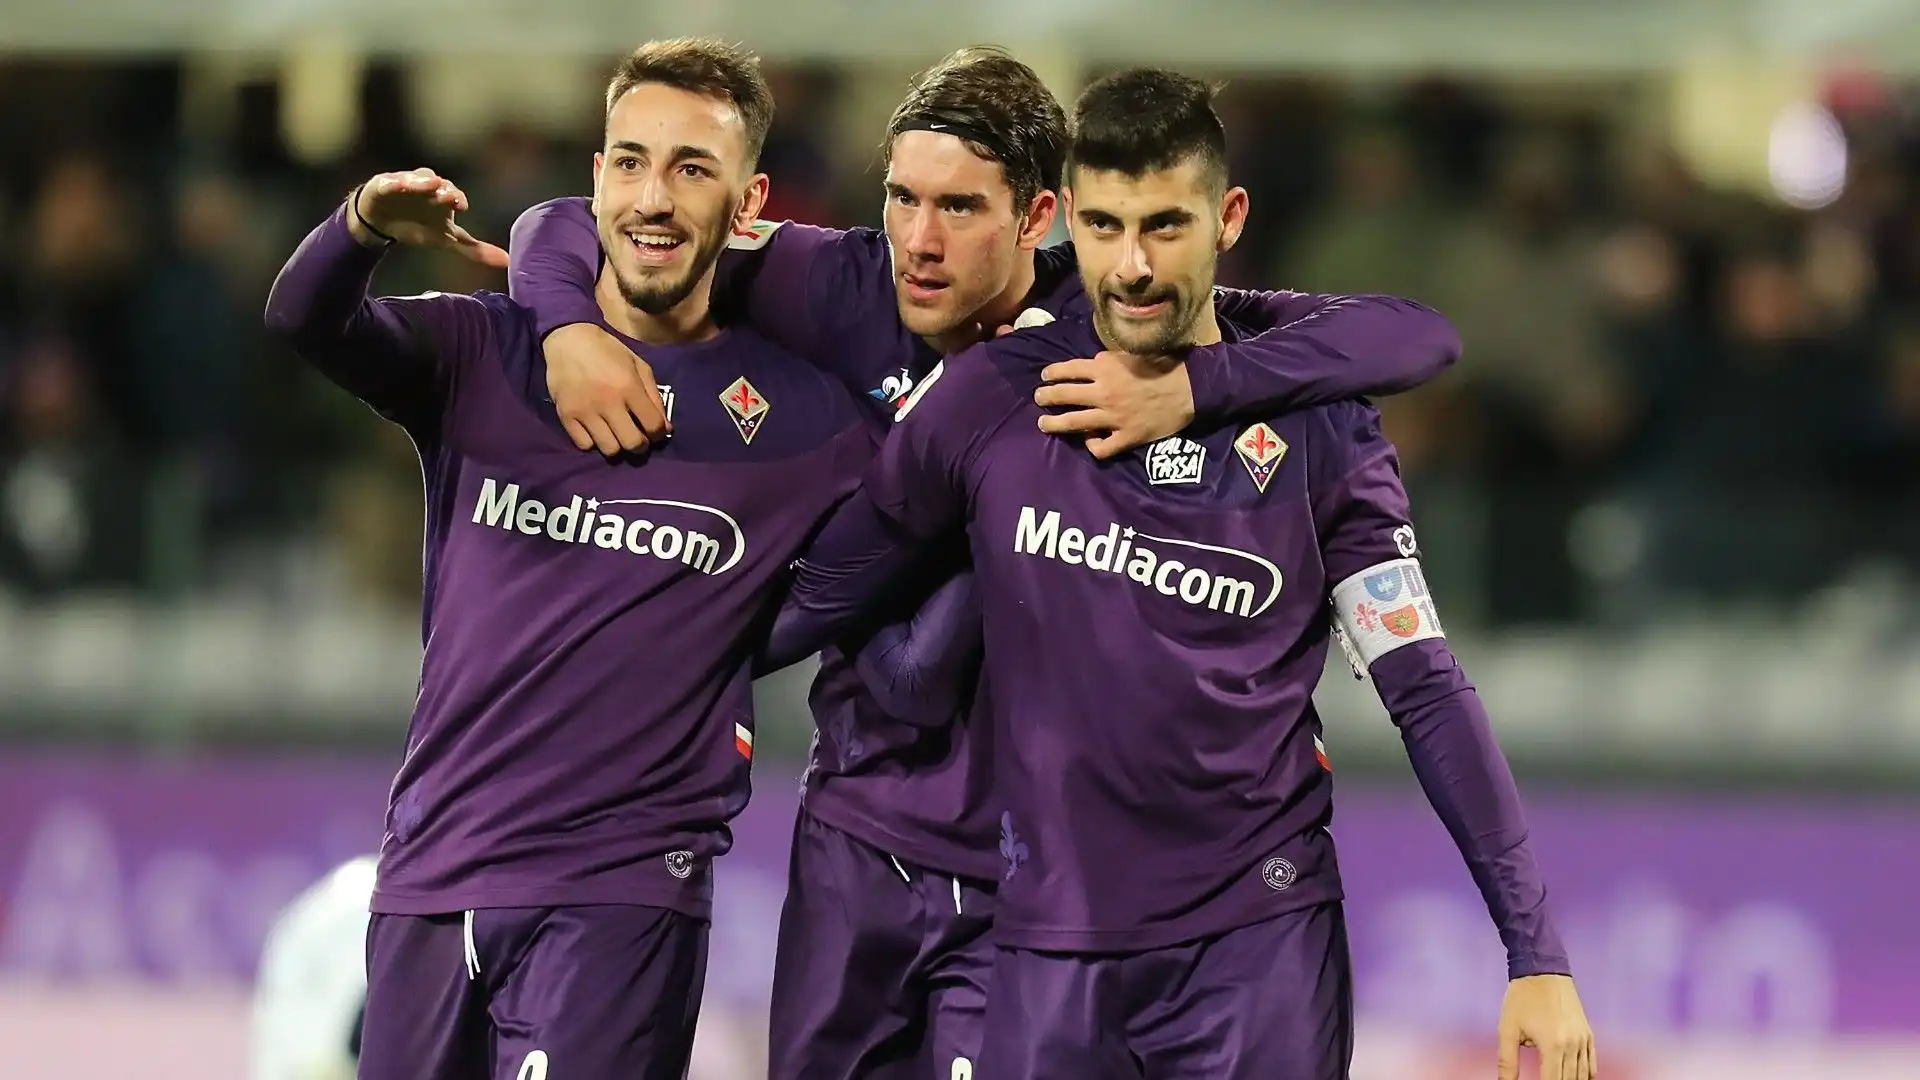 A settembre Benassi ha risolto il contratto che lo legava alla Fiorentina e non è più riuscito a trovare una squadra